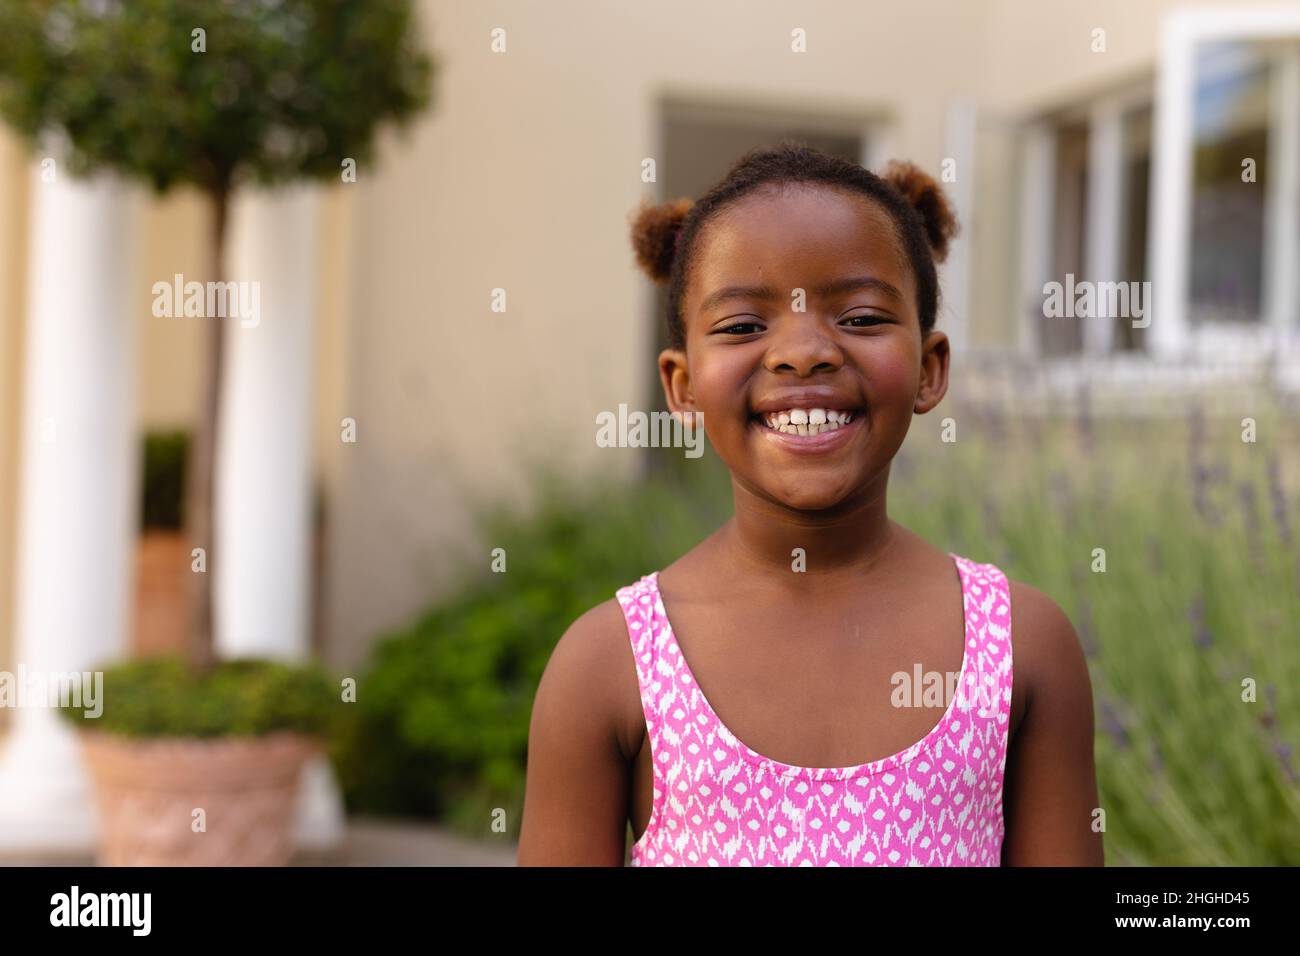 Portrait d'une jeune fille afro-américaine heureuse portant un haut sans manches rose Banque D'Images